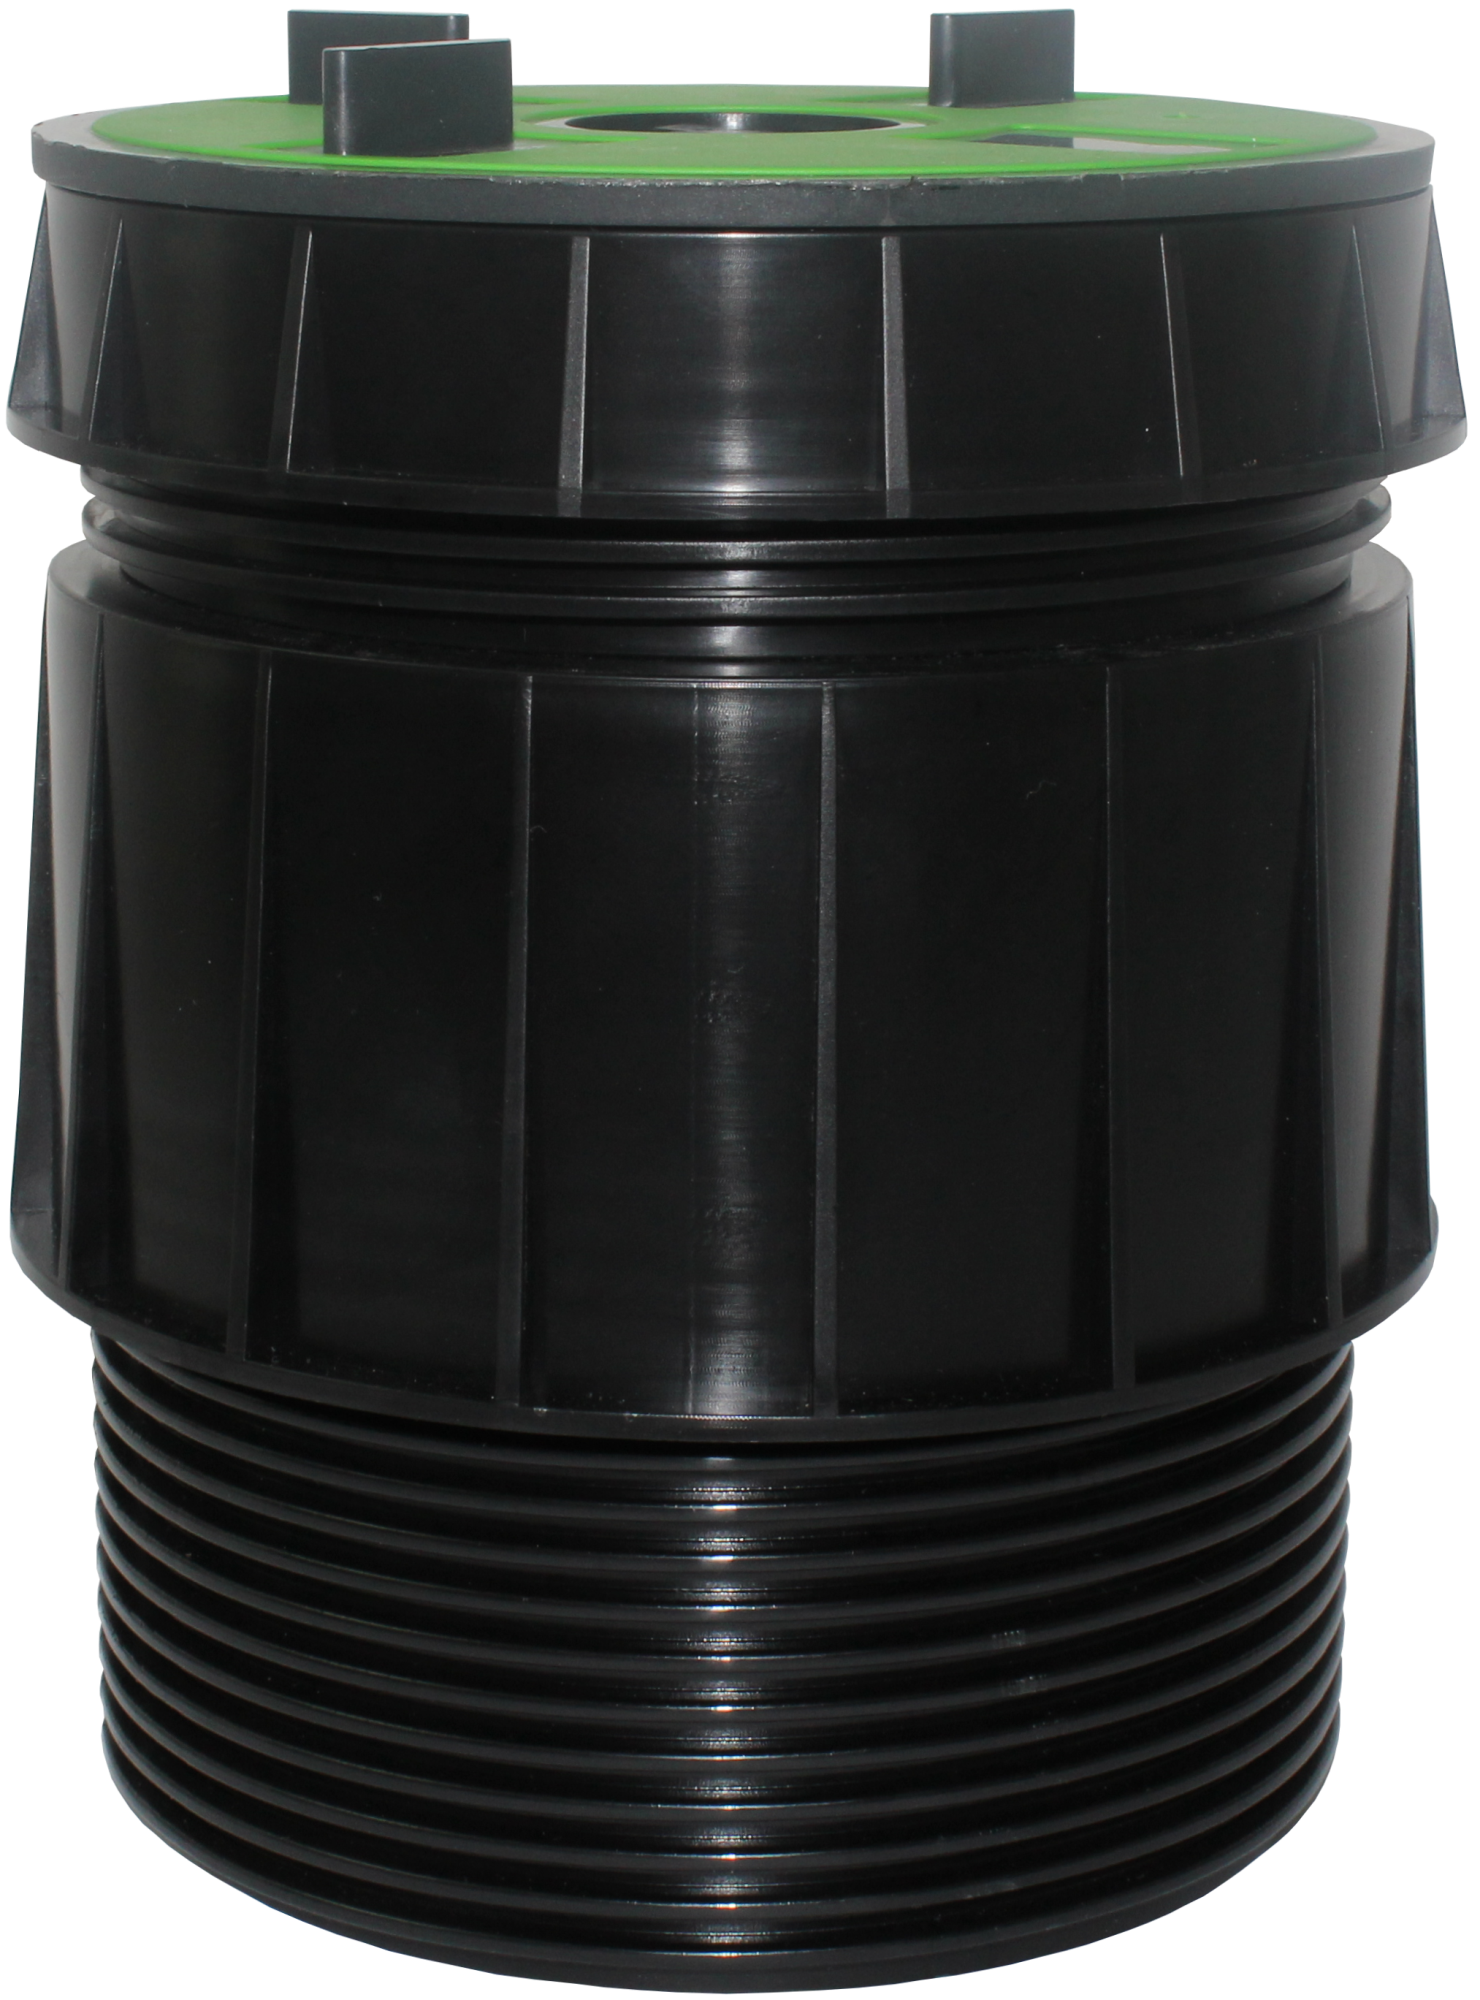 VOLFI Teleskop Dreh-Stelzlager, 5-tlg. Kunststoff, TL-VT100, 3Stege 5/10-140mm, verstb.100-175mm